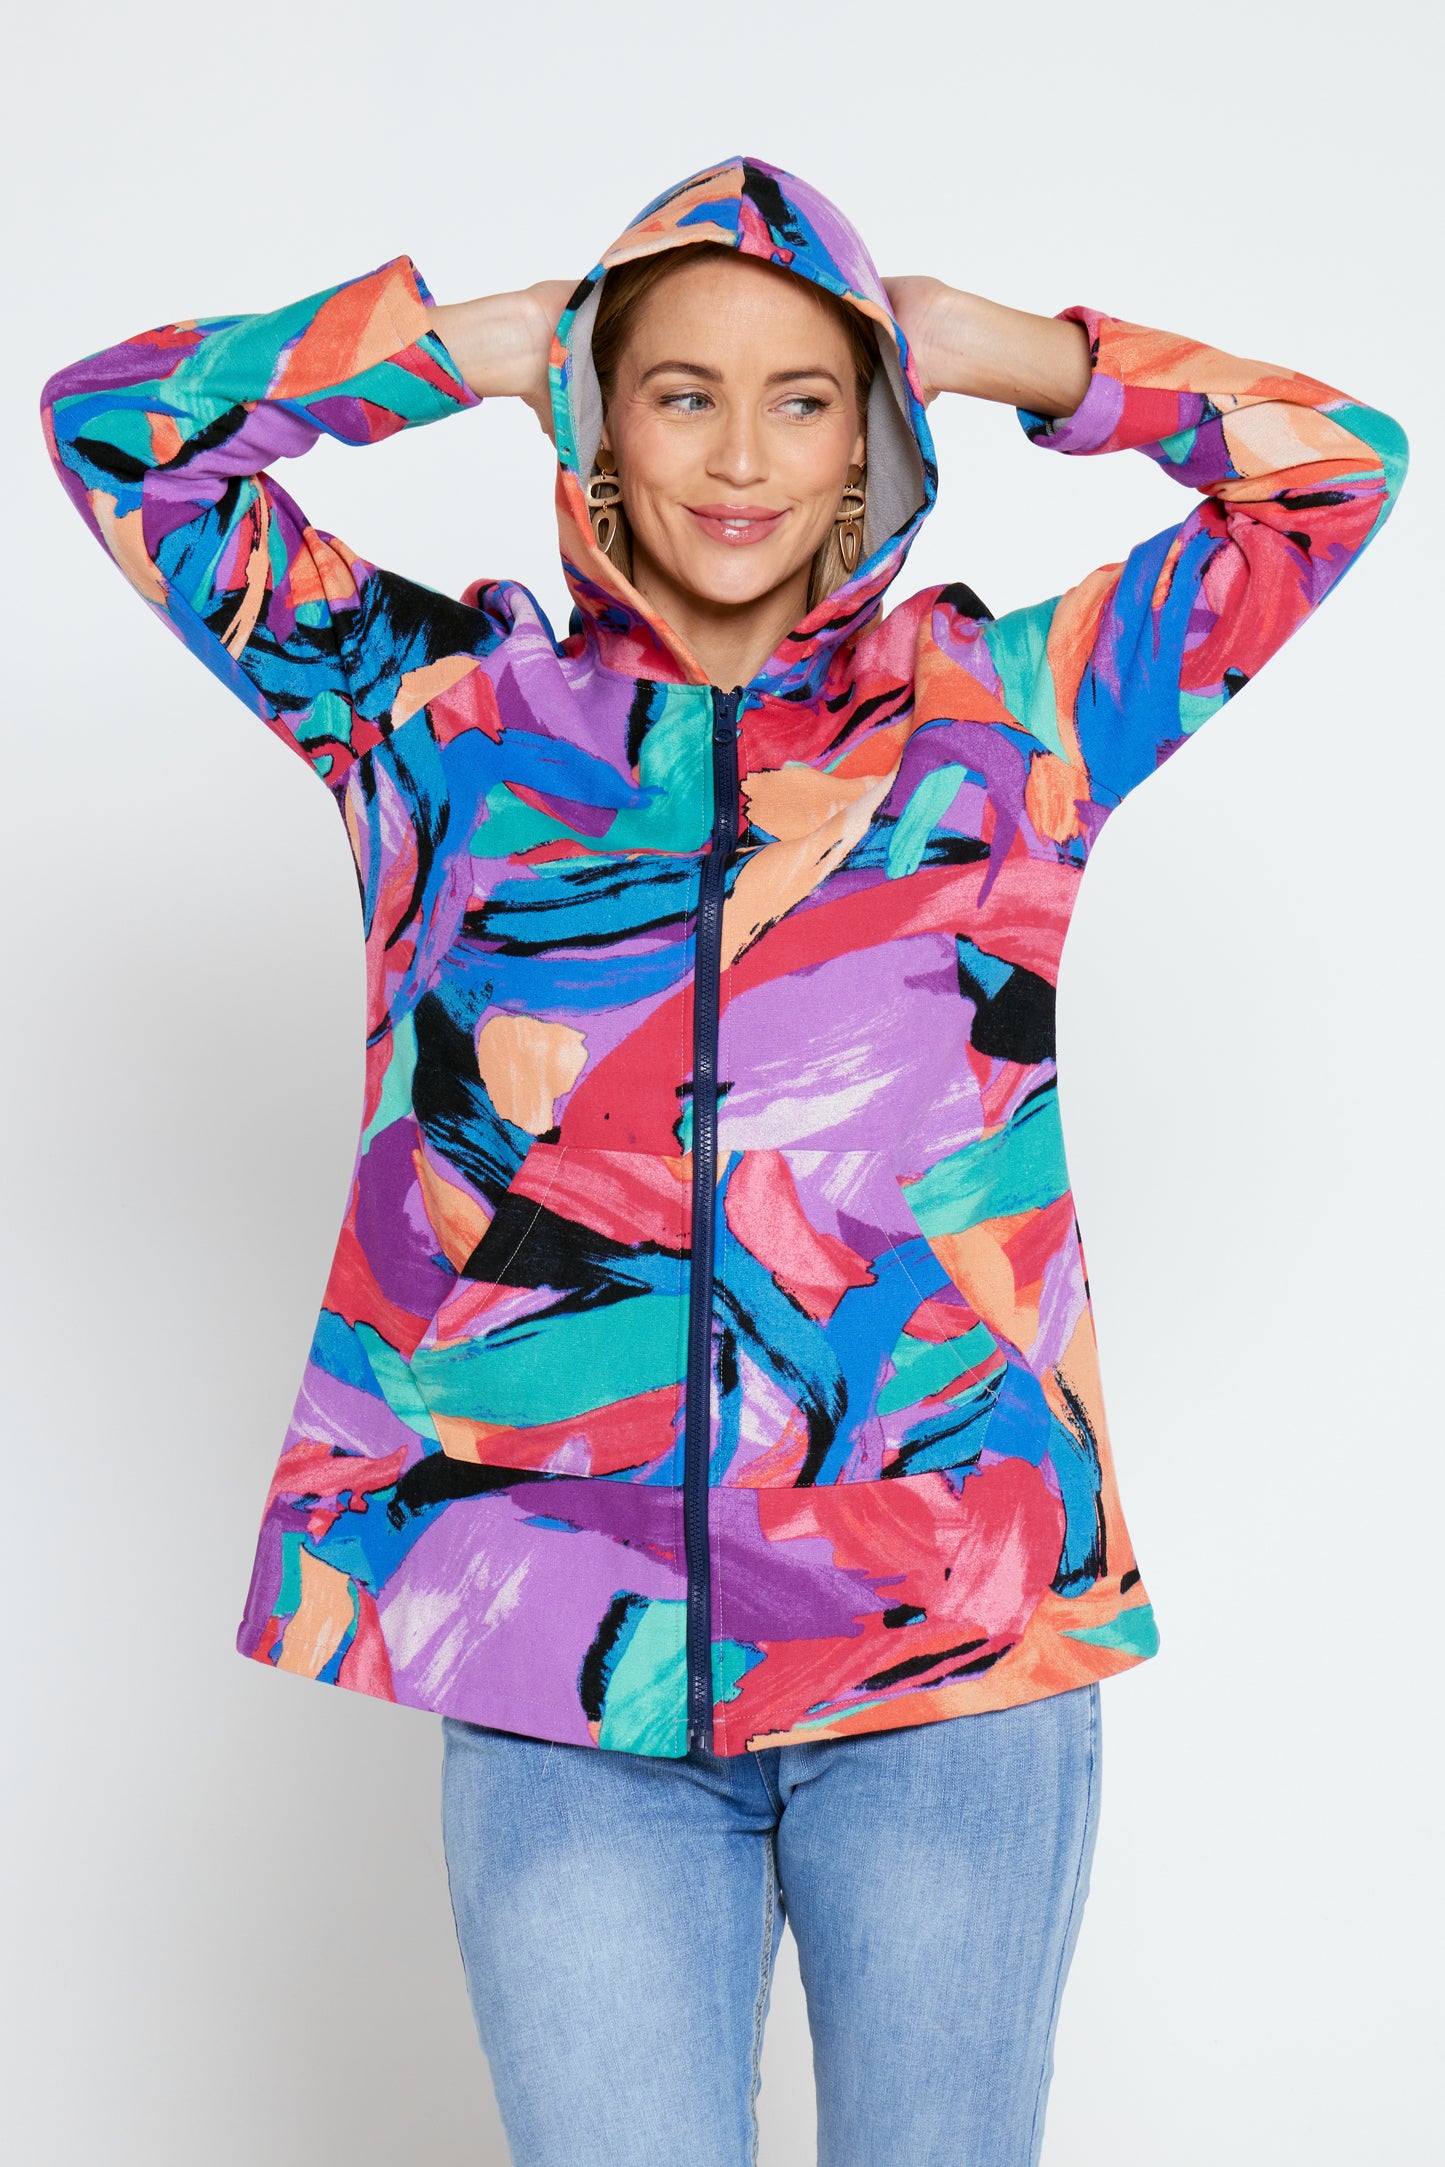 Hastings Fleece Lined Jacket - Rainbow Swirl